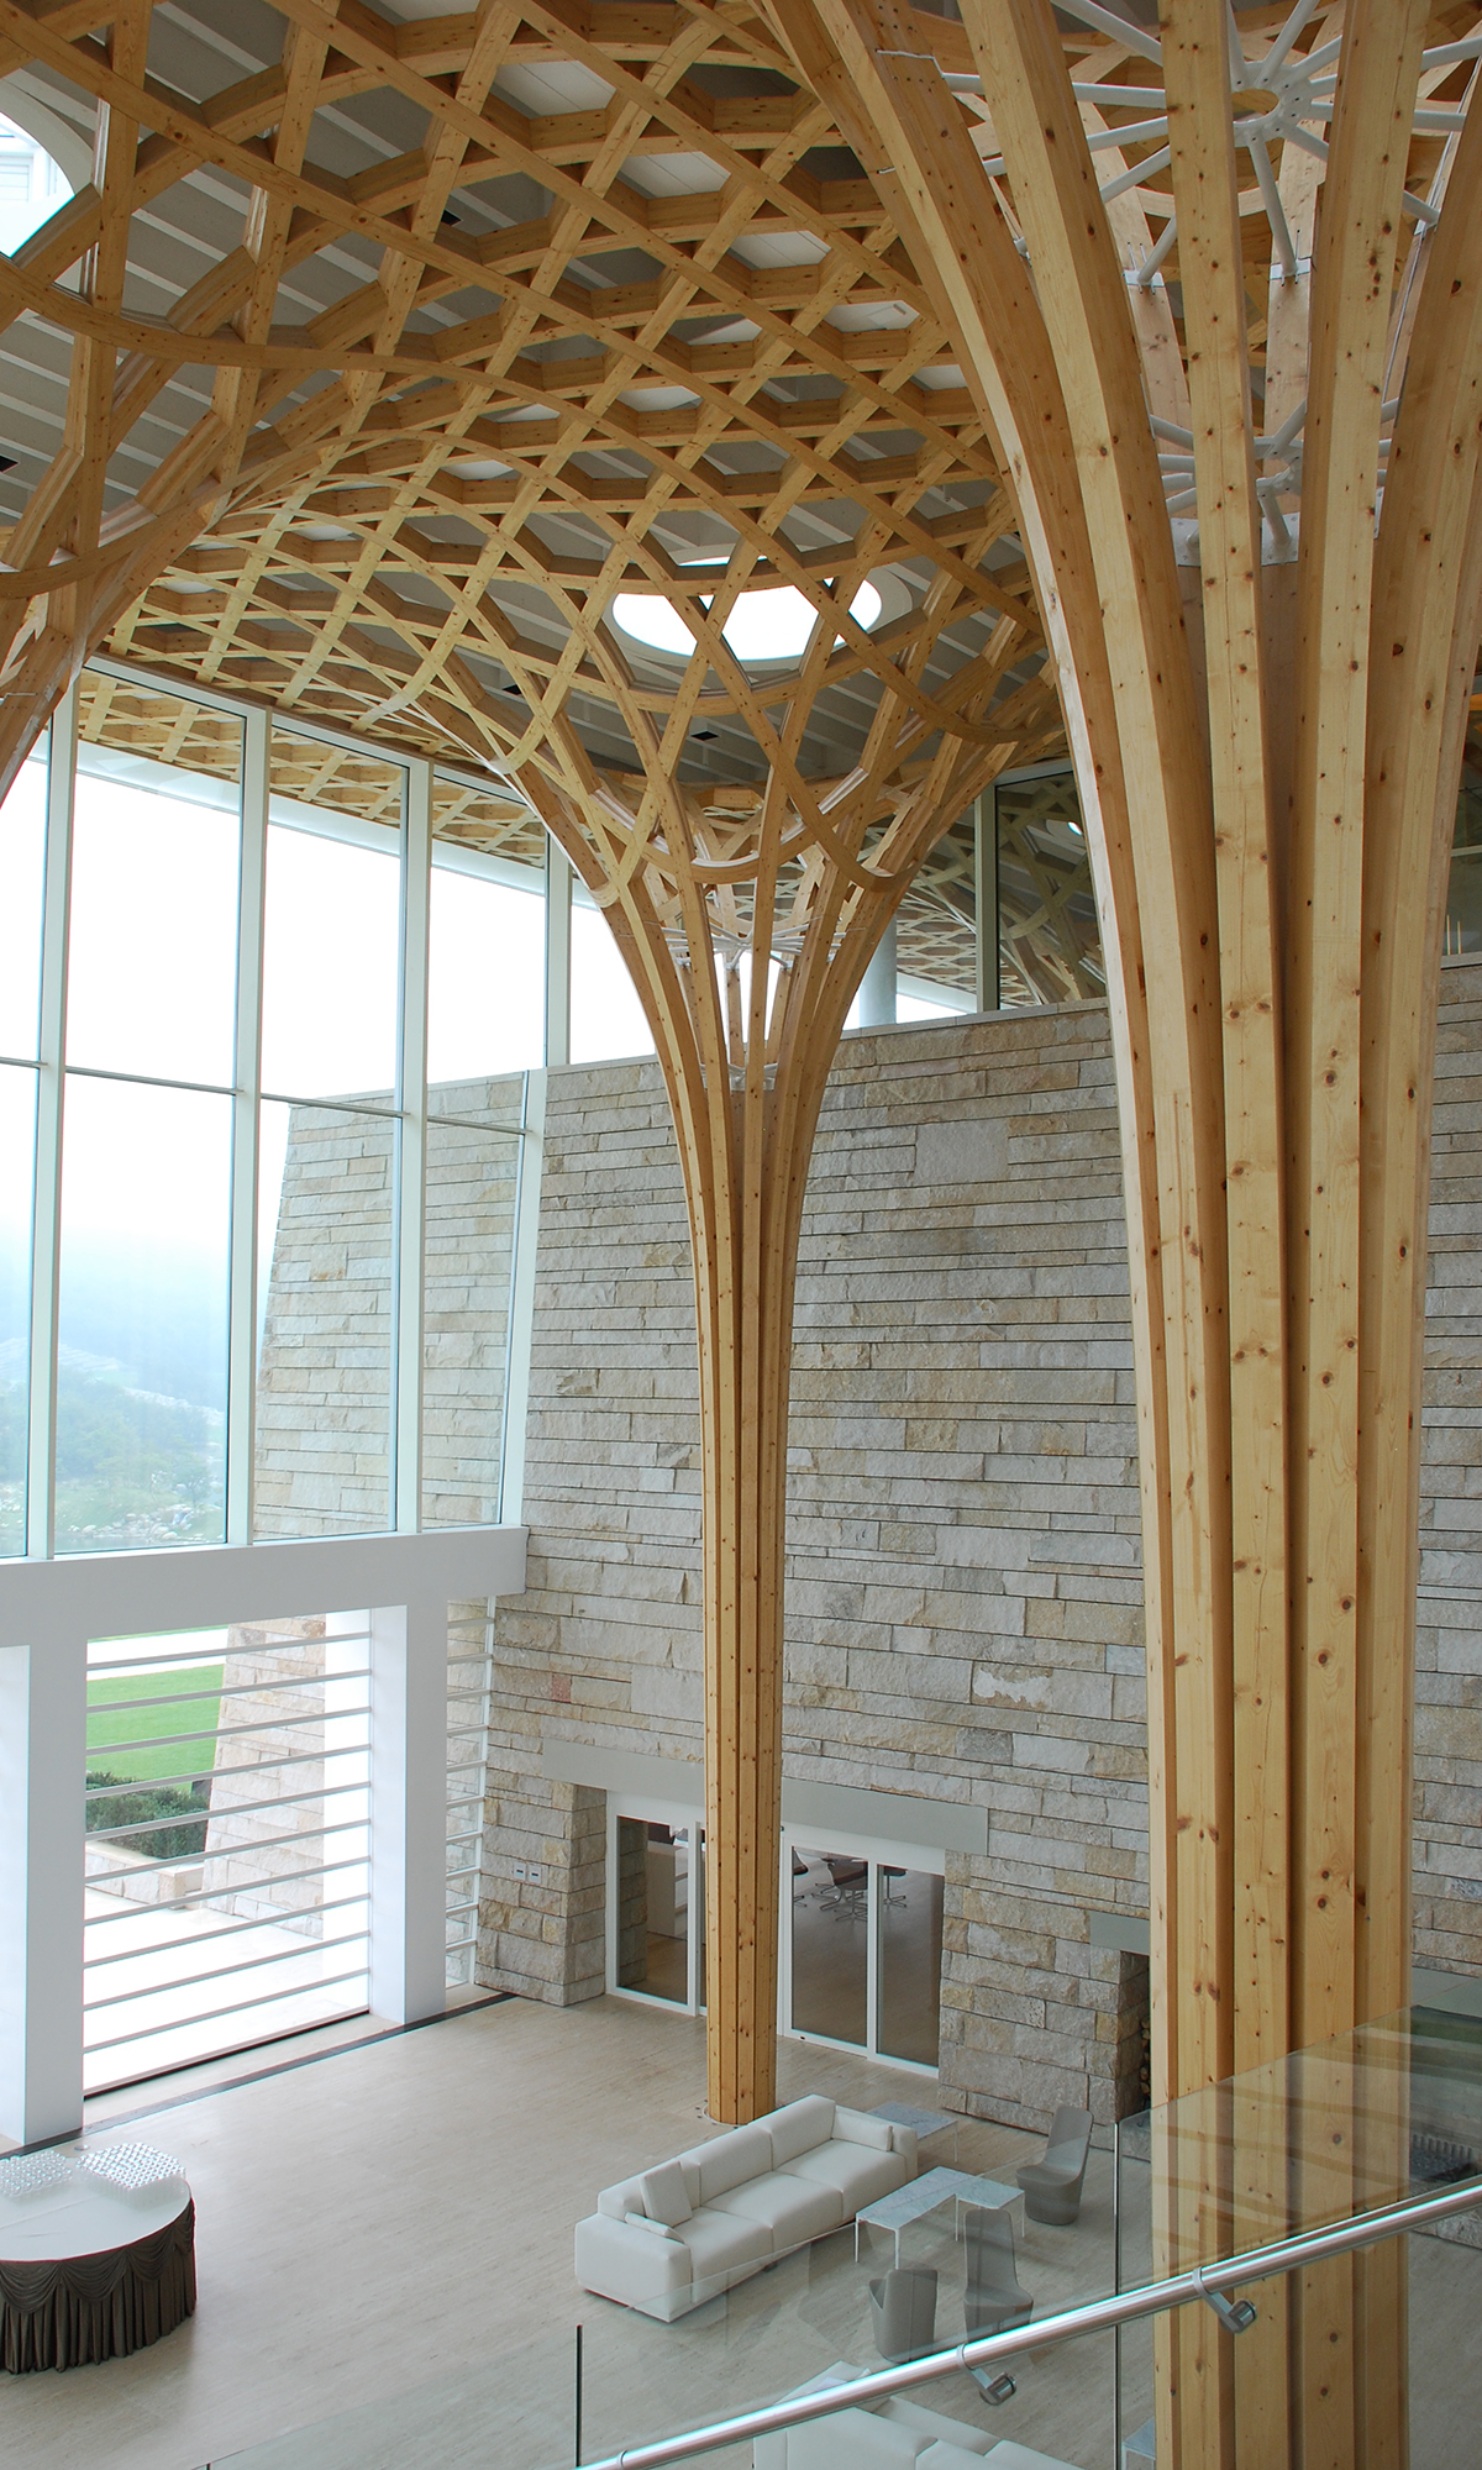 Les énormes colonnes de support ainsi que la structure de la toiture constituent les éléments caractéristiques à l’intérieur.